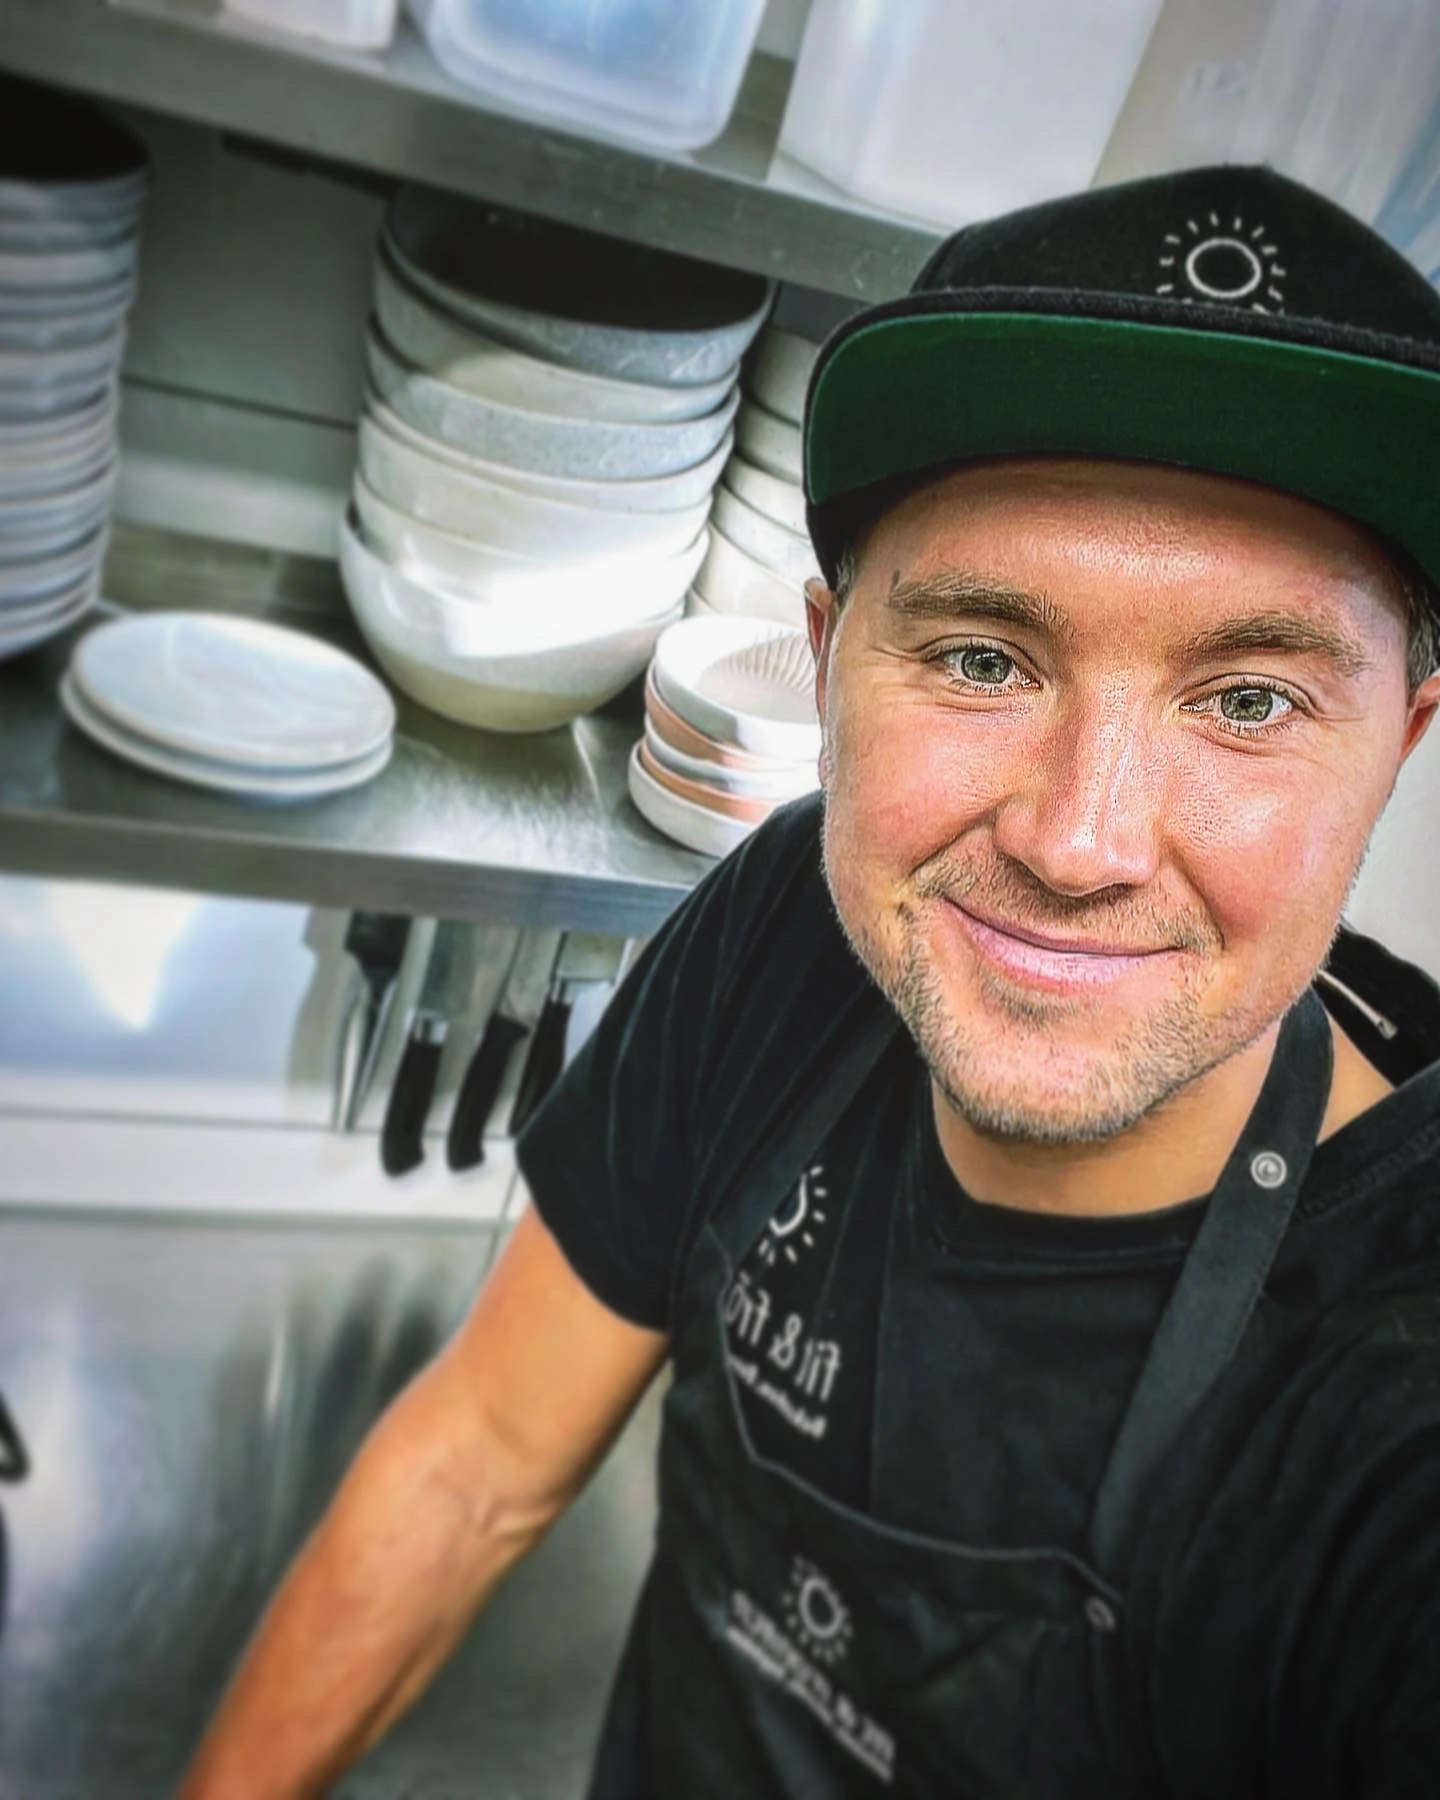 Geschäftsführer Tim Rühle von Fit und Fröhlich steht lächelnd in einer organisierten Restaurantküche, trägt eine schwarze Schürze und eine Kappe, umgeben von ordentlich gestapeltem Geschirr.